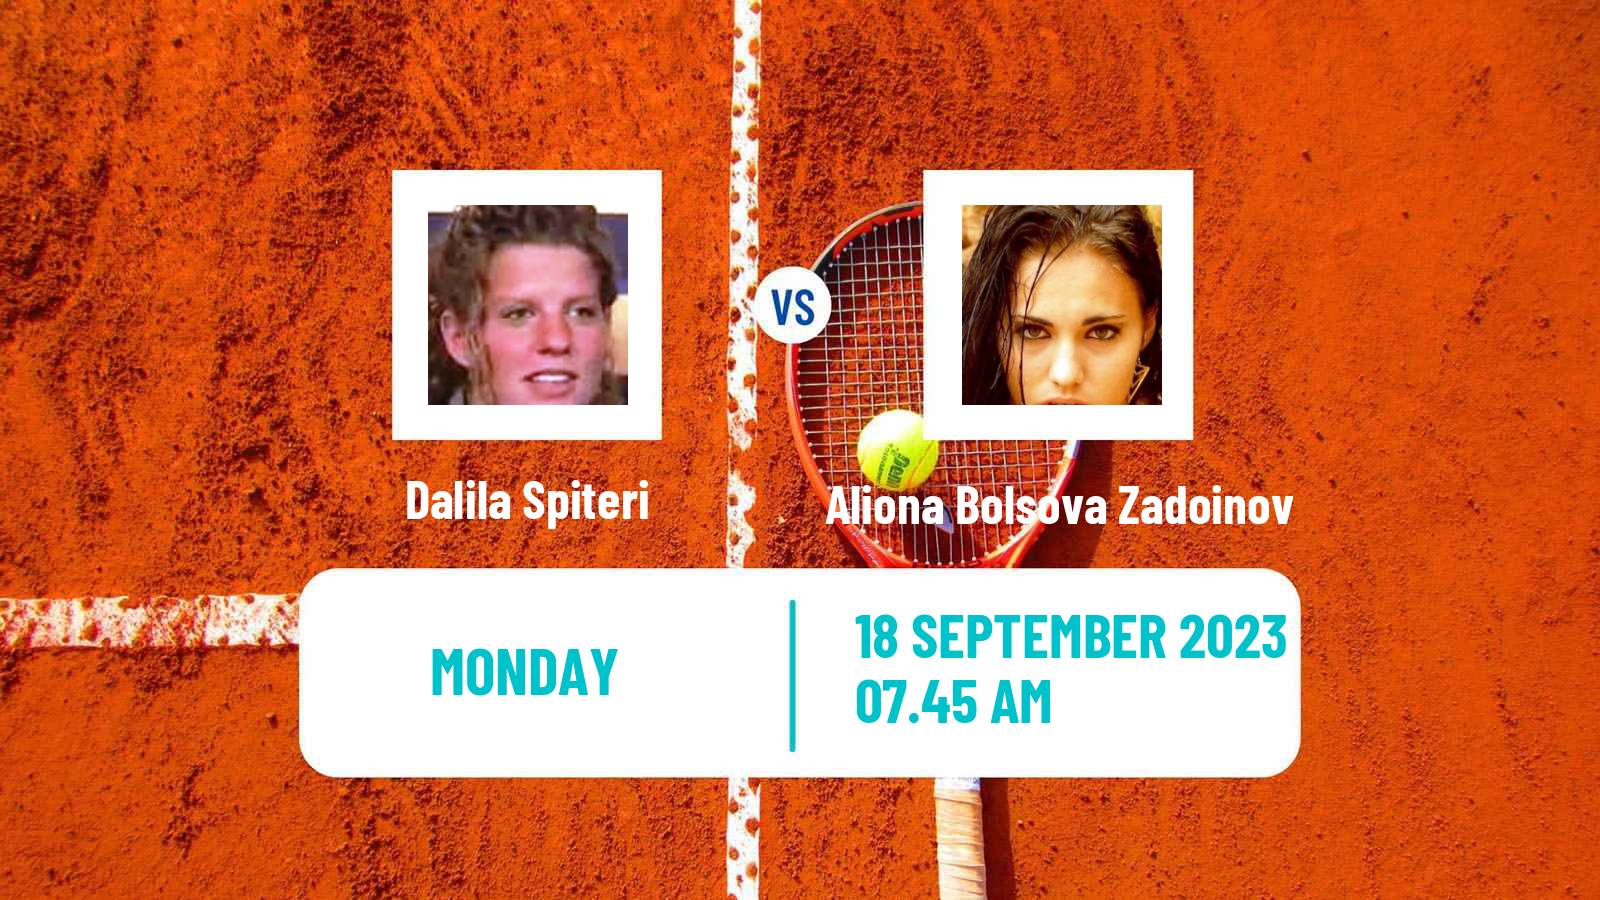 Tennis Parma Challenger Women Dalila Spiteri - Aliona Bolsova Zadoinov